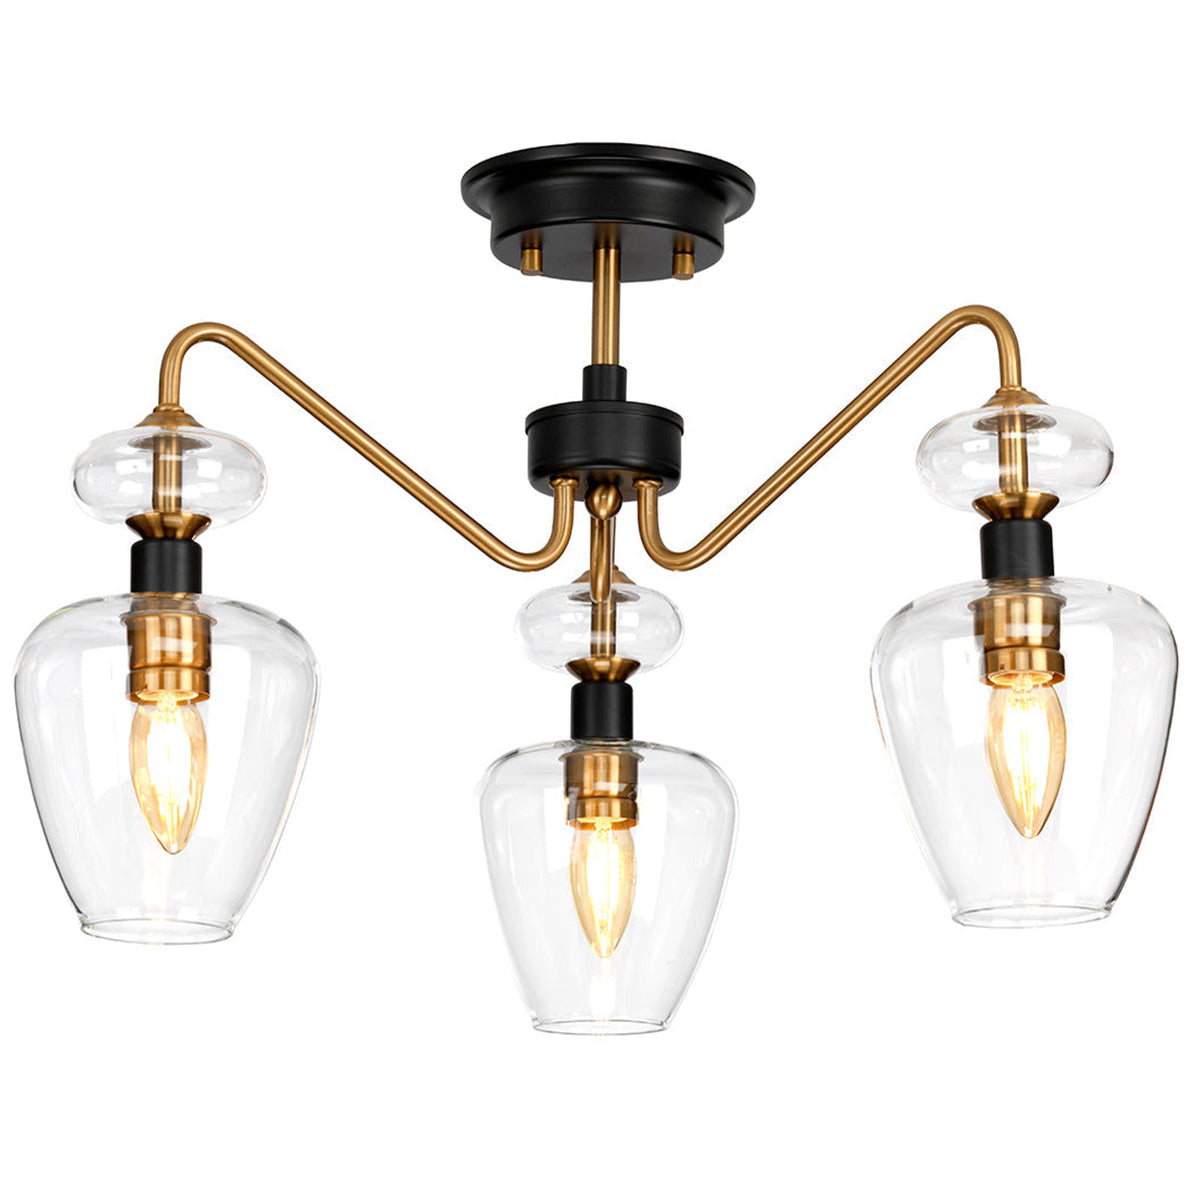 Ivan Semi-Flush 3-Light Ceiling Light, Aged Brass